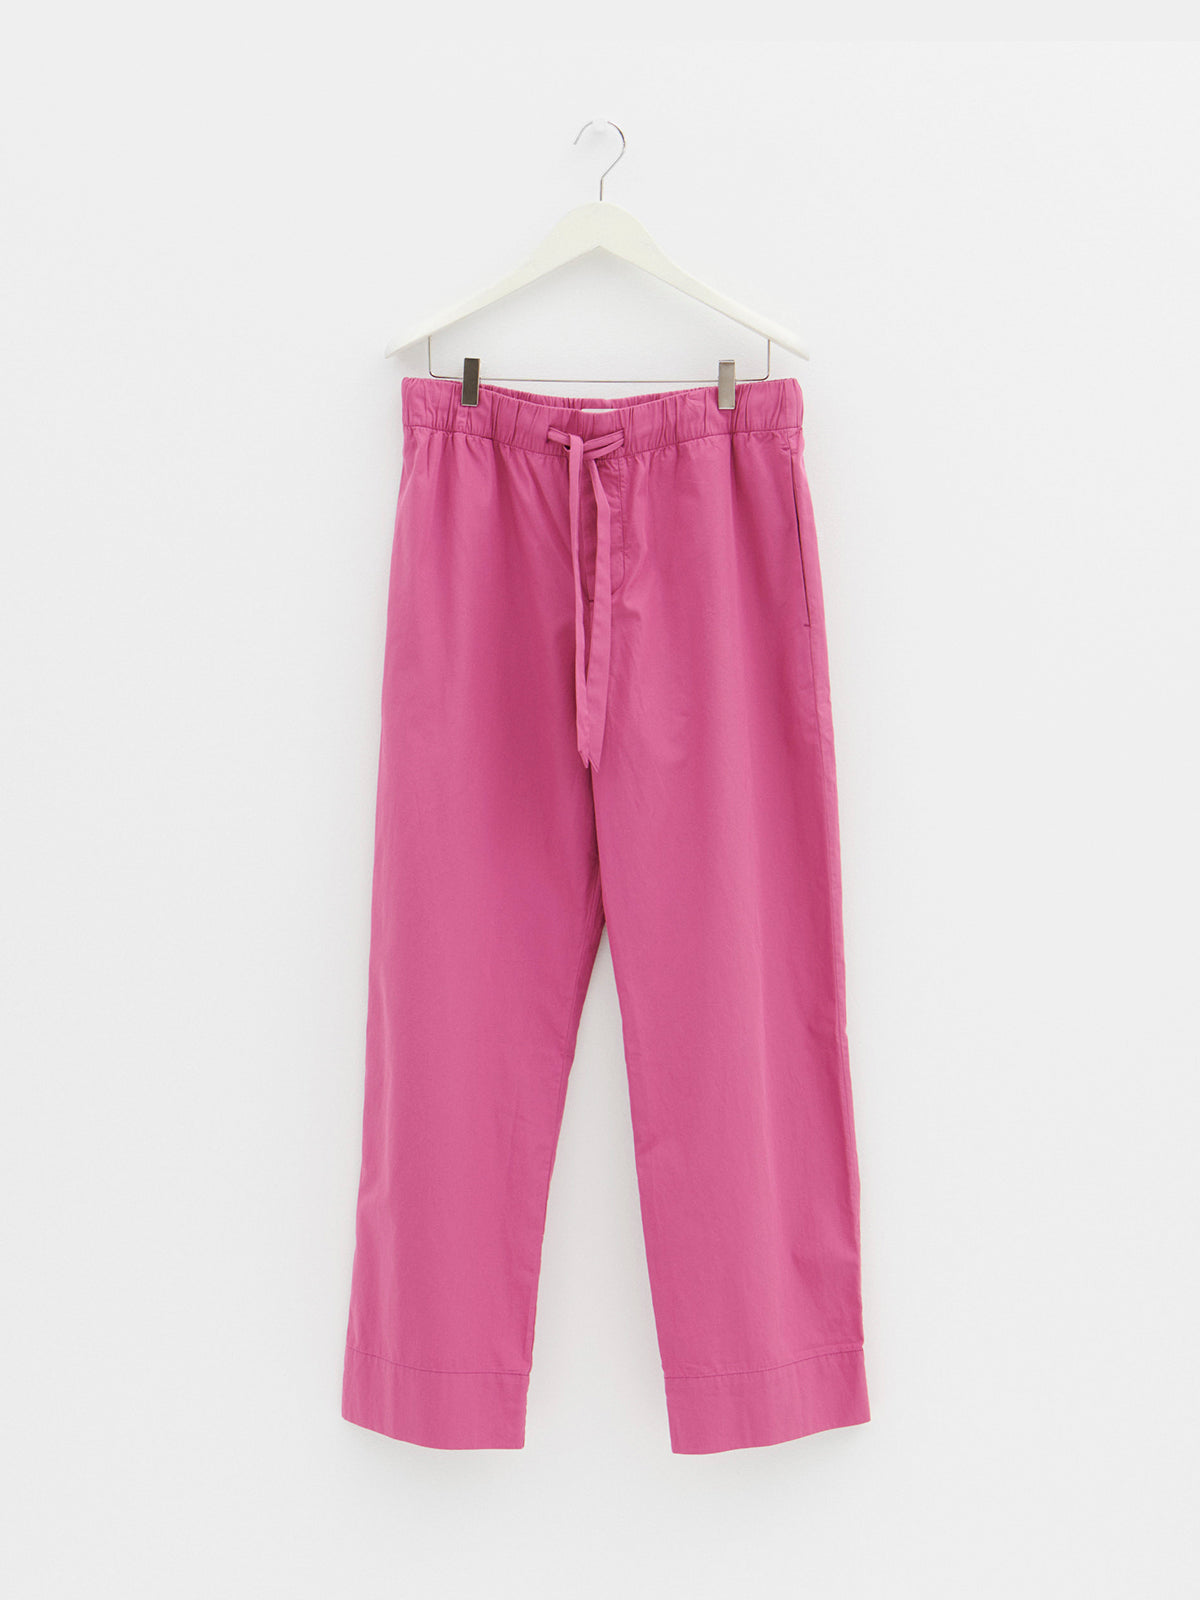 Tekla - Poplin Pyjamas Pants in Lingonberry